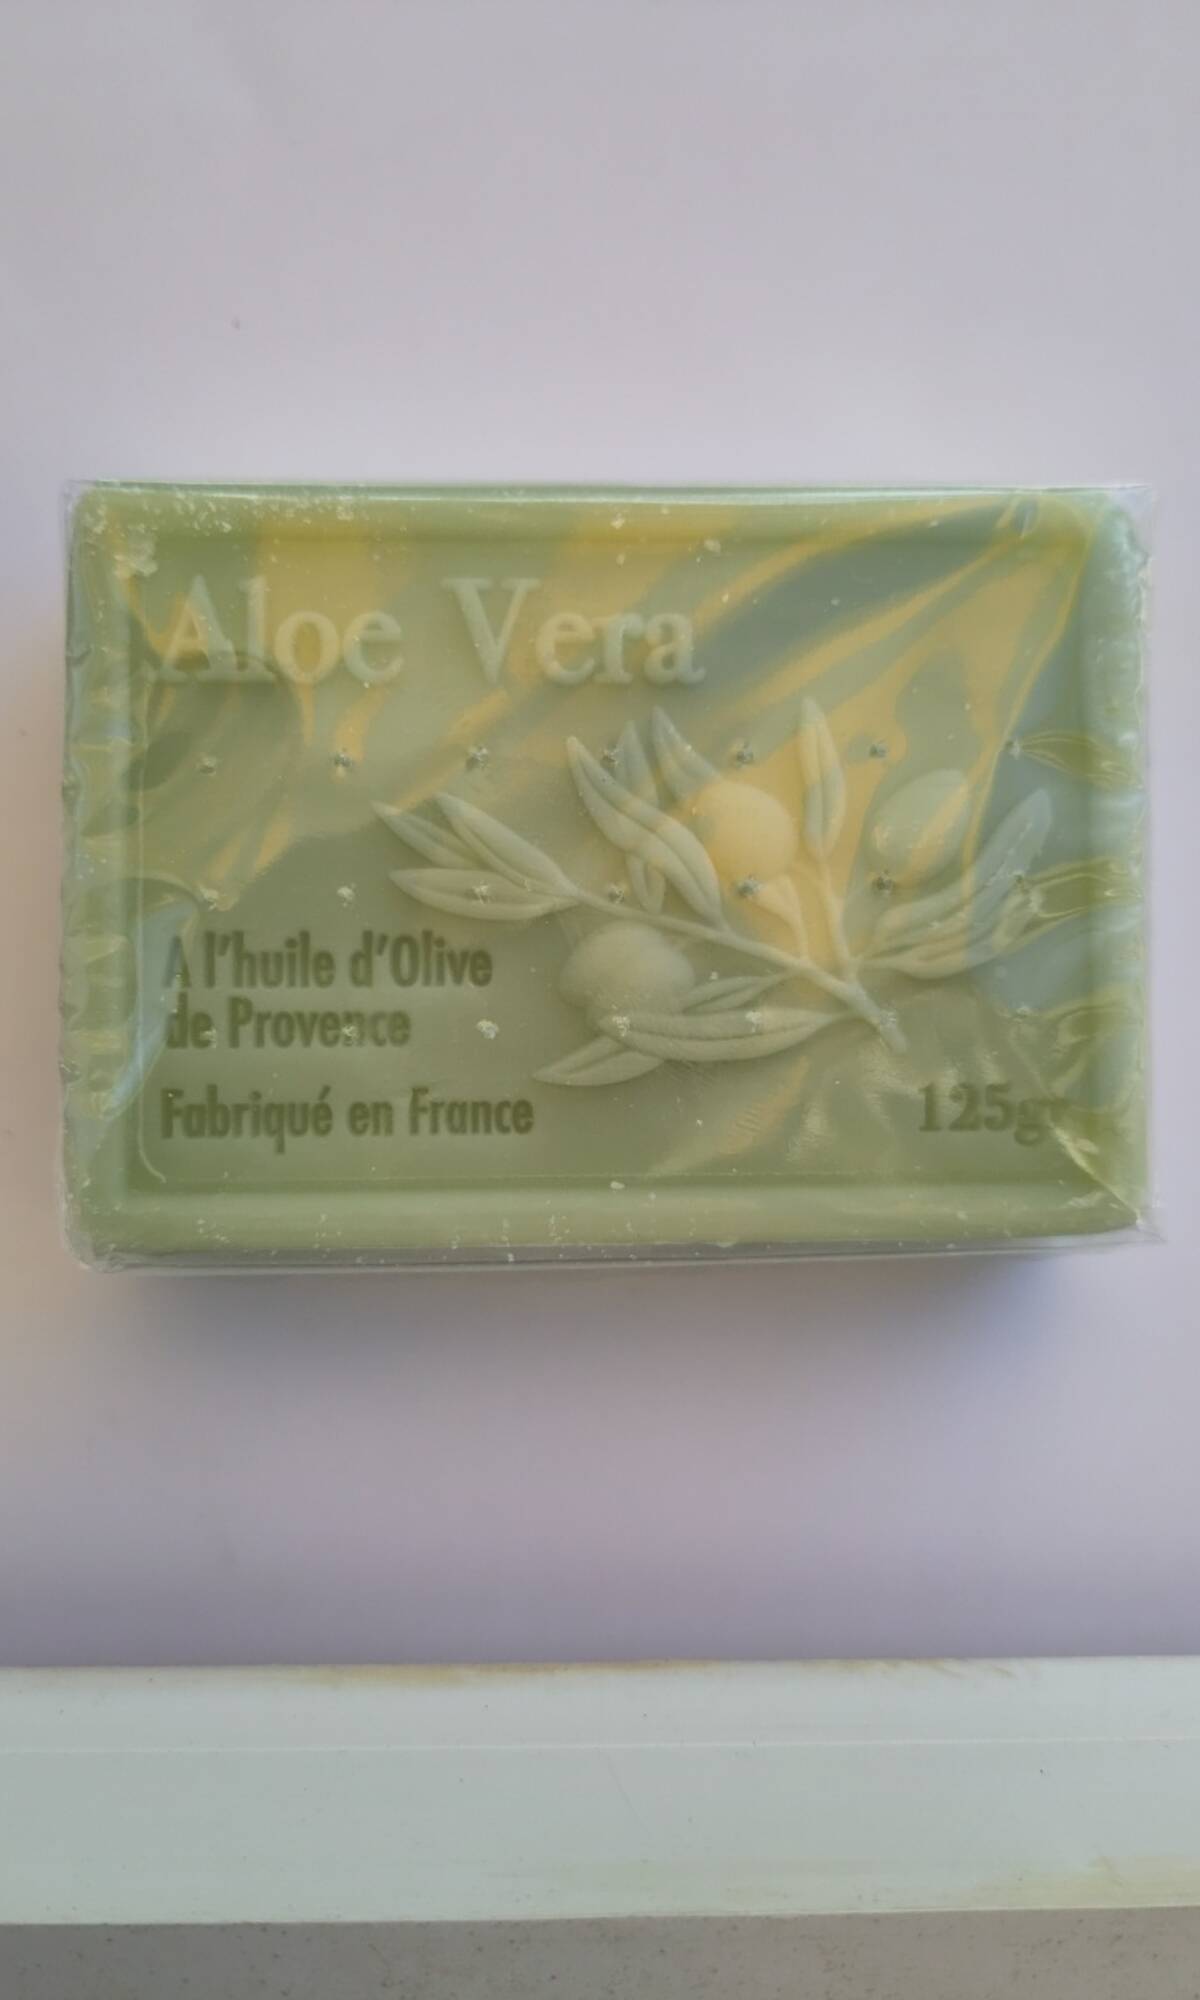 ALOE VERA - SAVON ALOE VERA - Al'huile d'olive